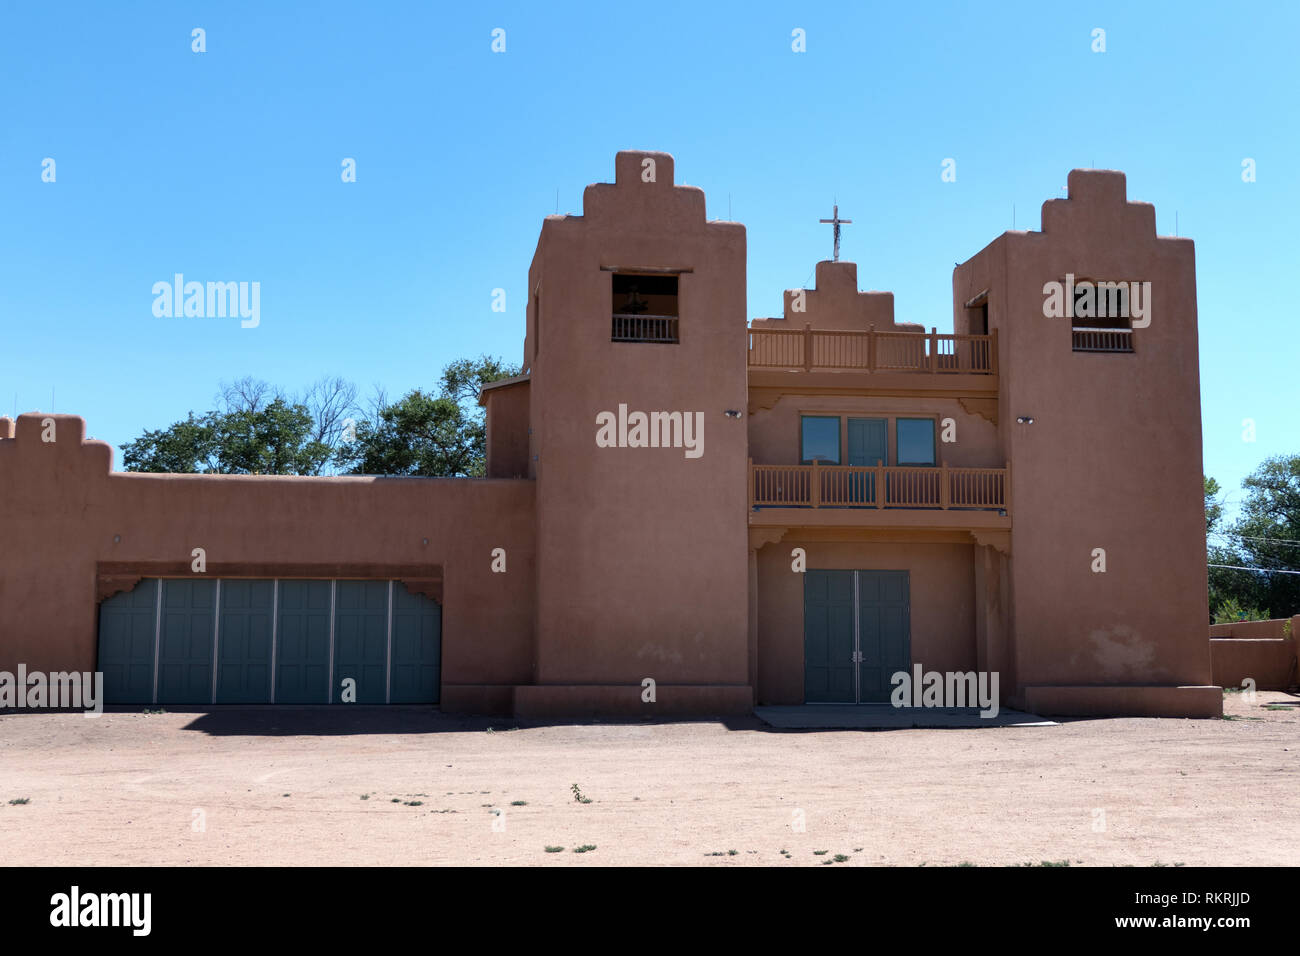 Alte katholische Kirche in Tesuque Pueblo, Santa Fe County, New Mexico, Vereinigte Staaten von Amerika. Blick auf ein kleines indianisches Dorf im Südwesten der USA Stockfoto